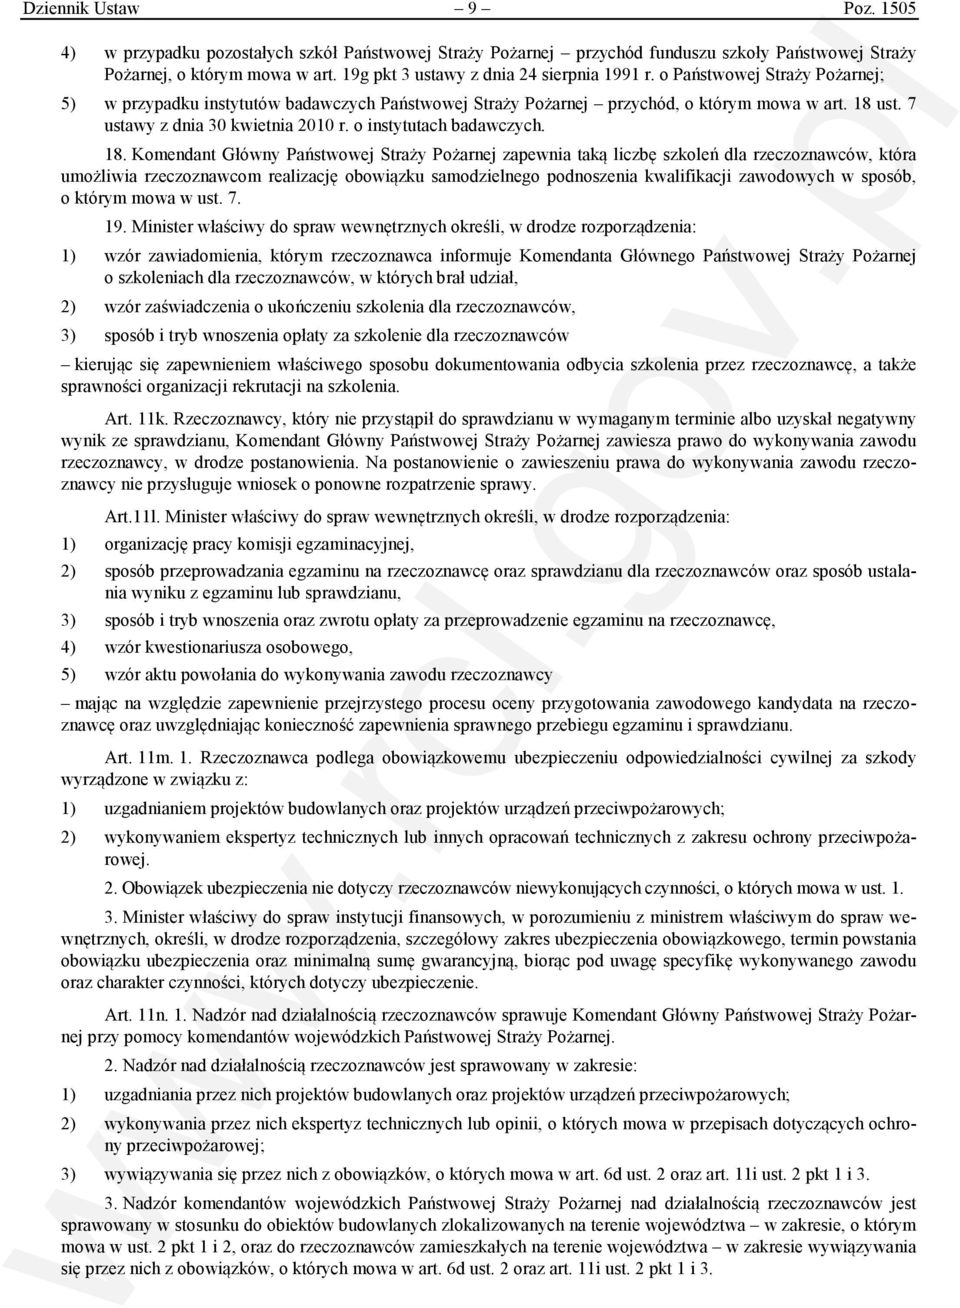 7 ustawy z dnia 30 kwietnia 2010 r. o instytutach badawczych. 18.